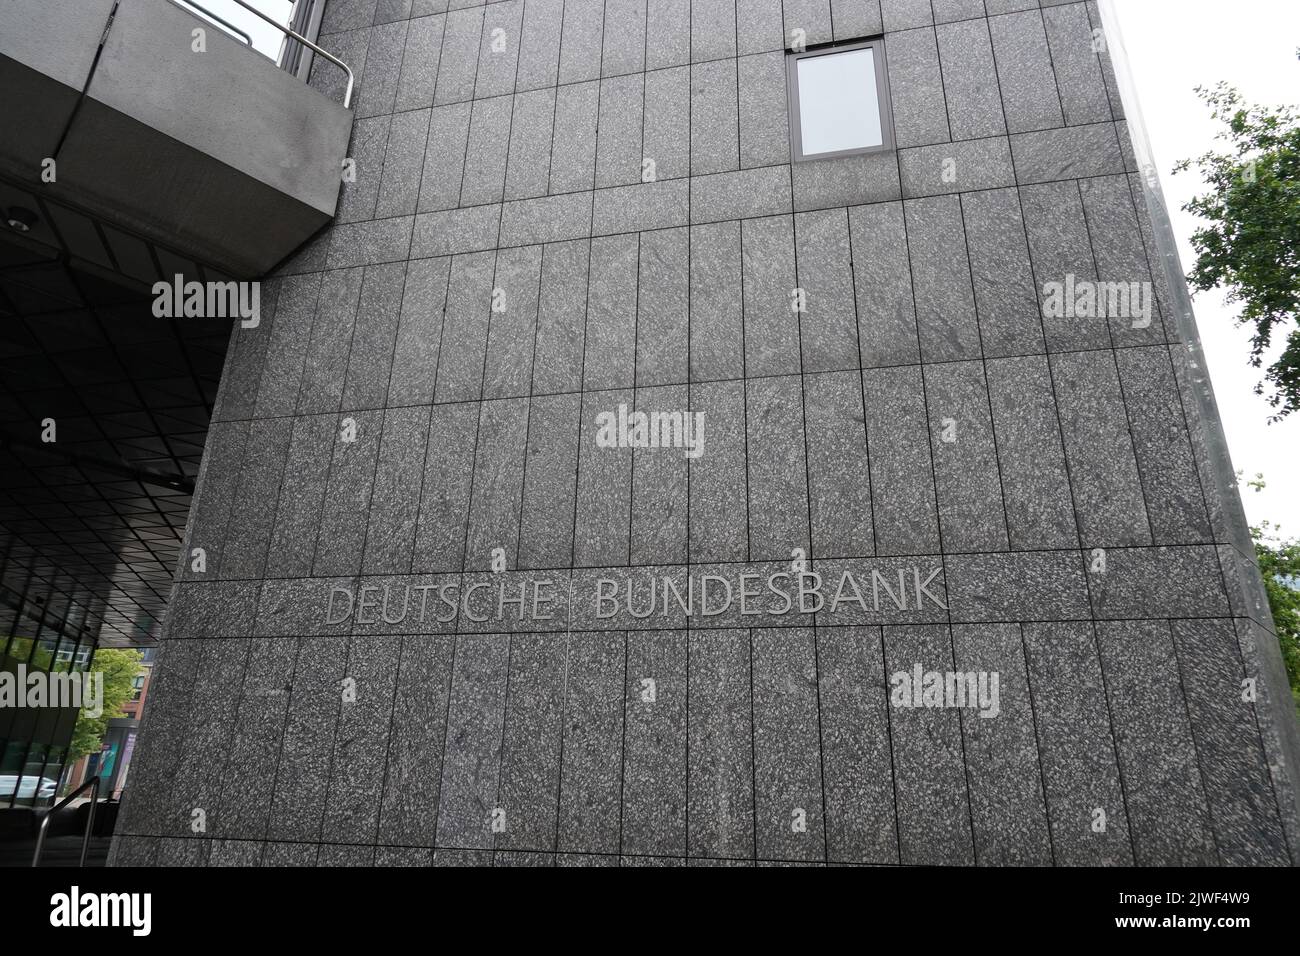 Gebäude der Deutschen Bundesbank mit dem Namen in deutscher Sprache. Stockfoto